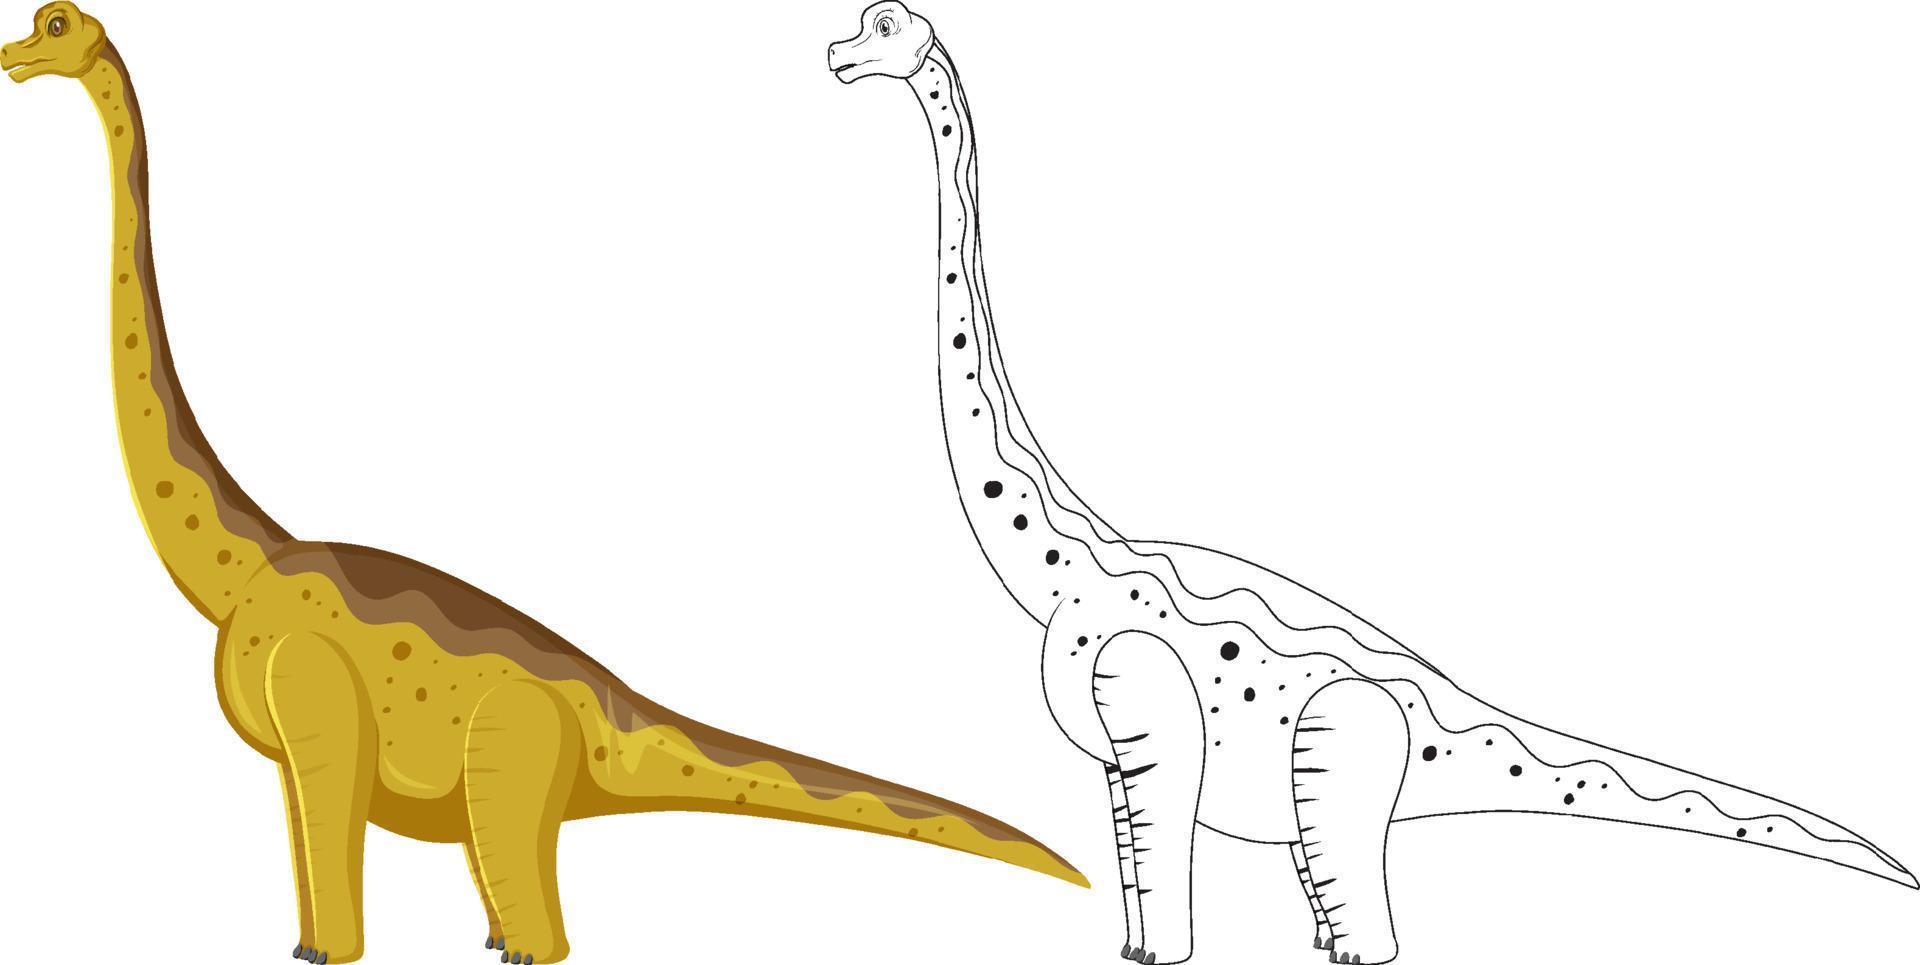 brachiosaurusdinosaurus met zijn krabbeloverzicht op witte achtergrond vector